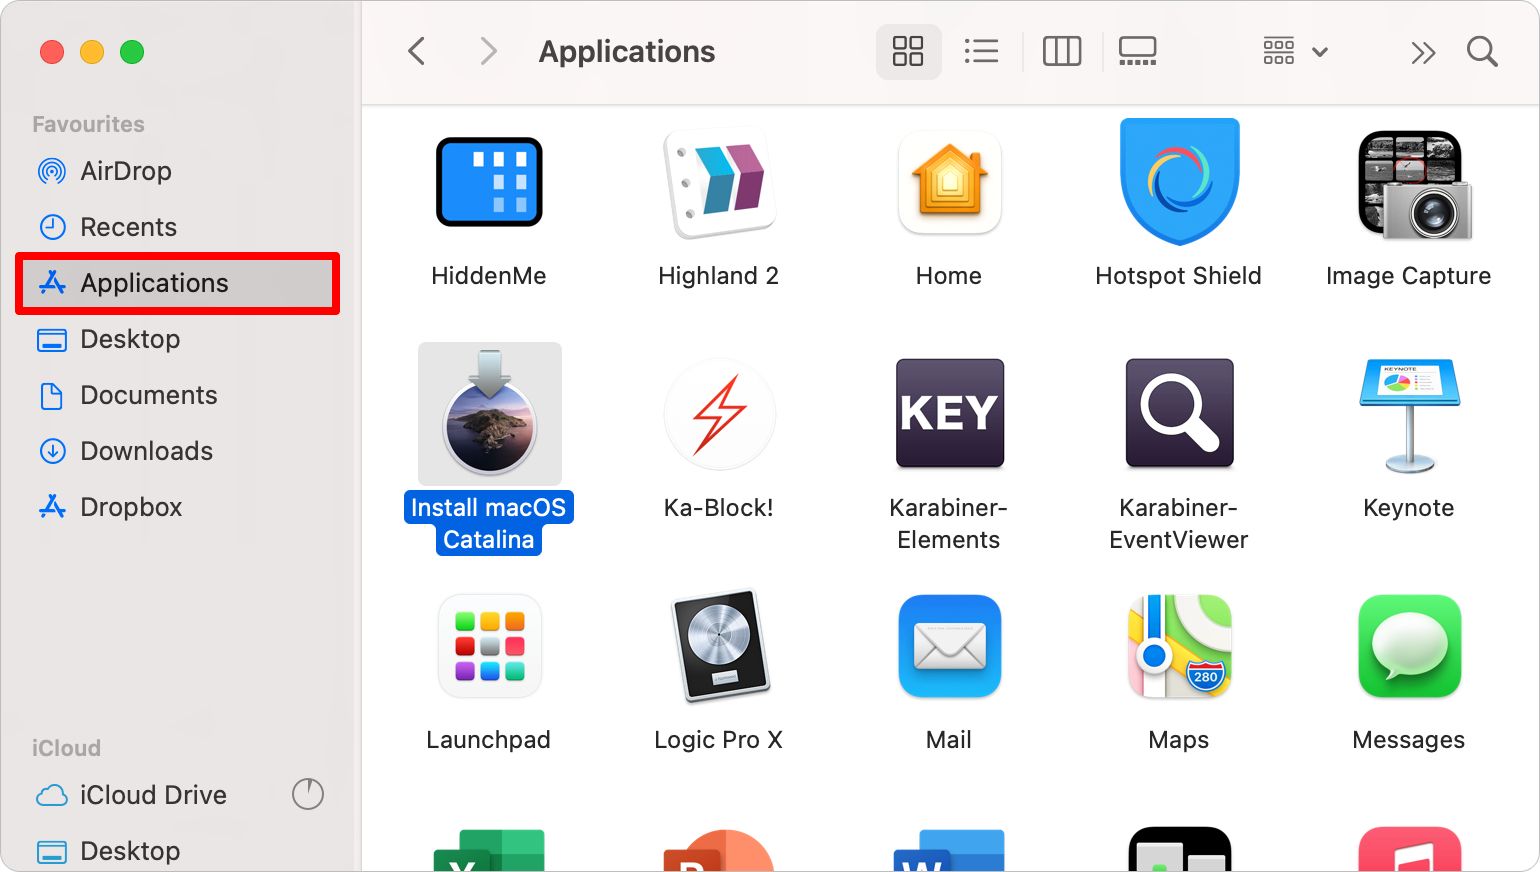 Install macOS Catalina in Applications folder